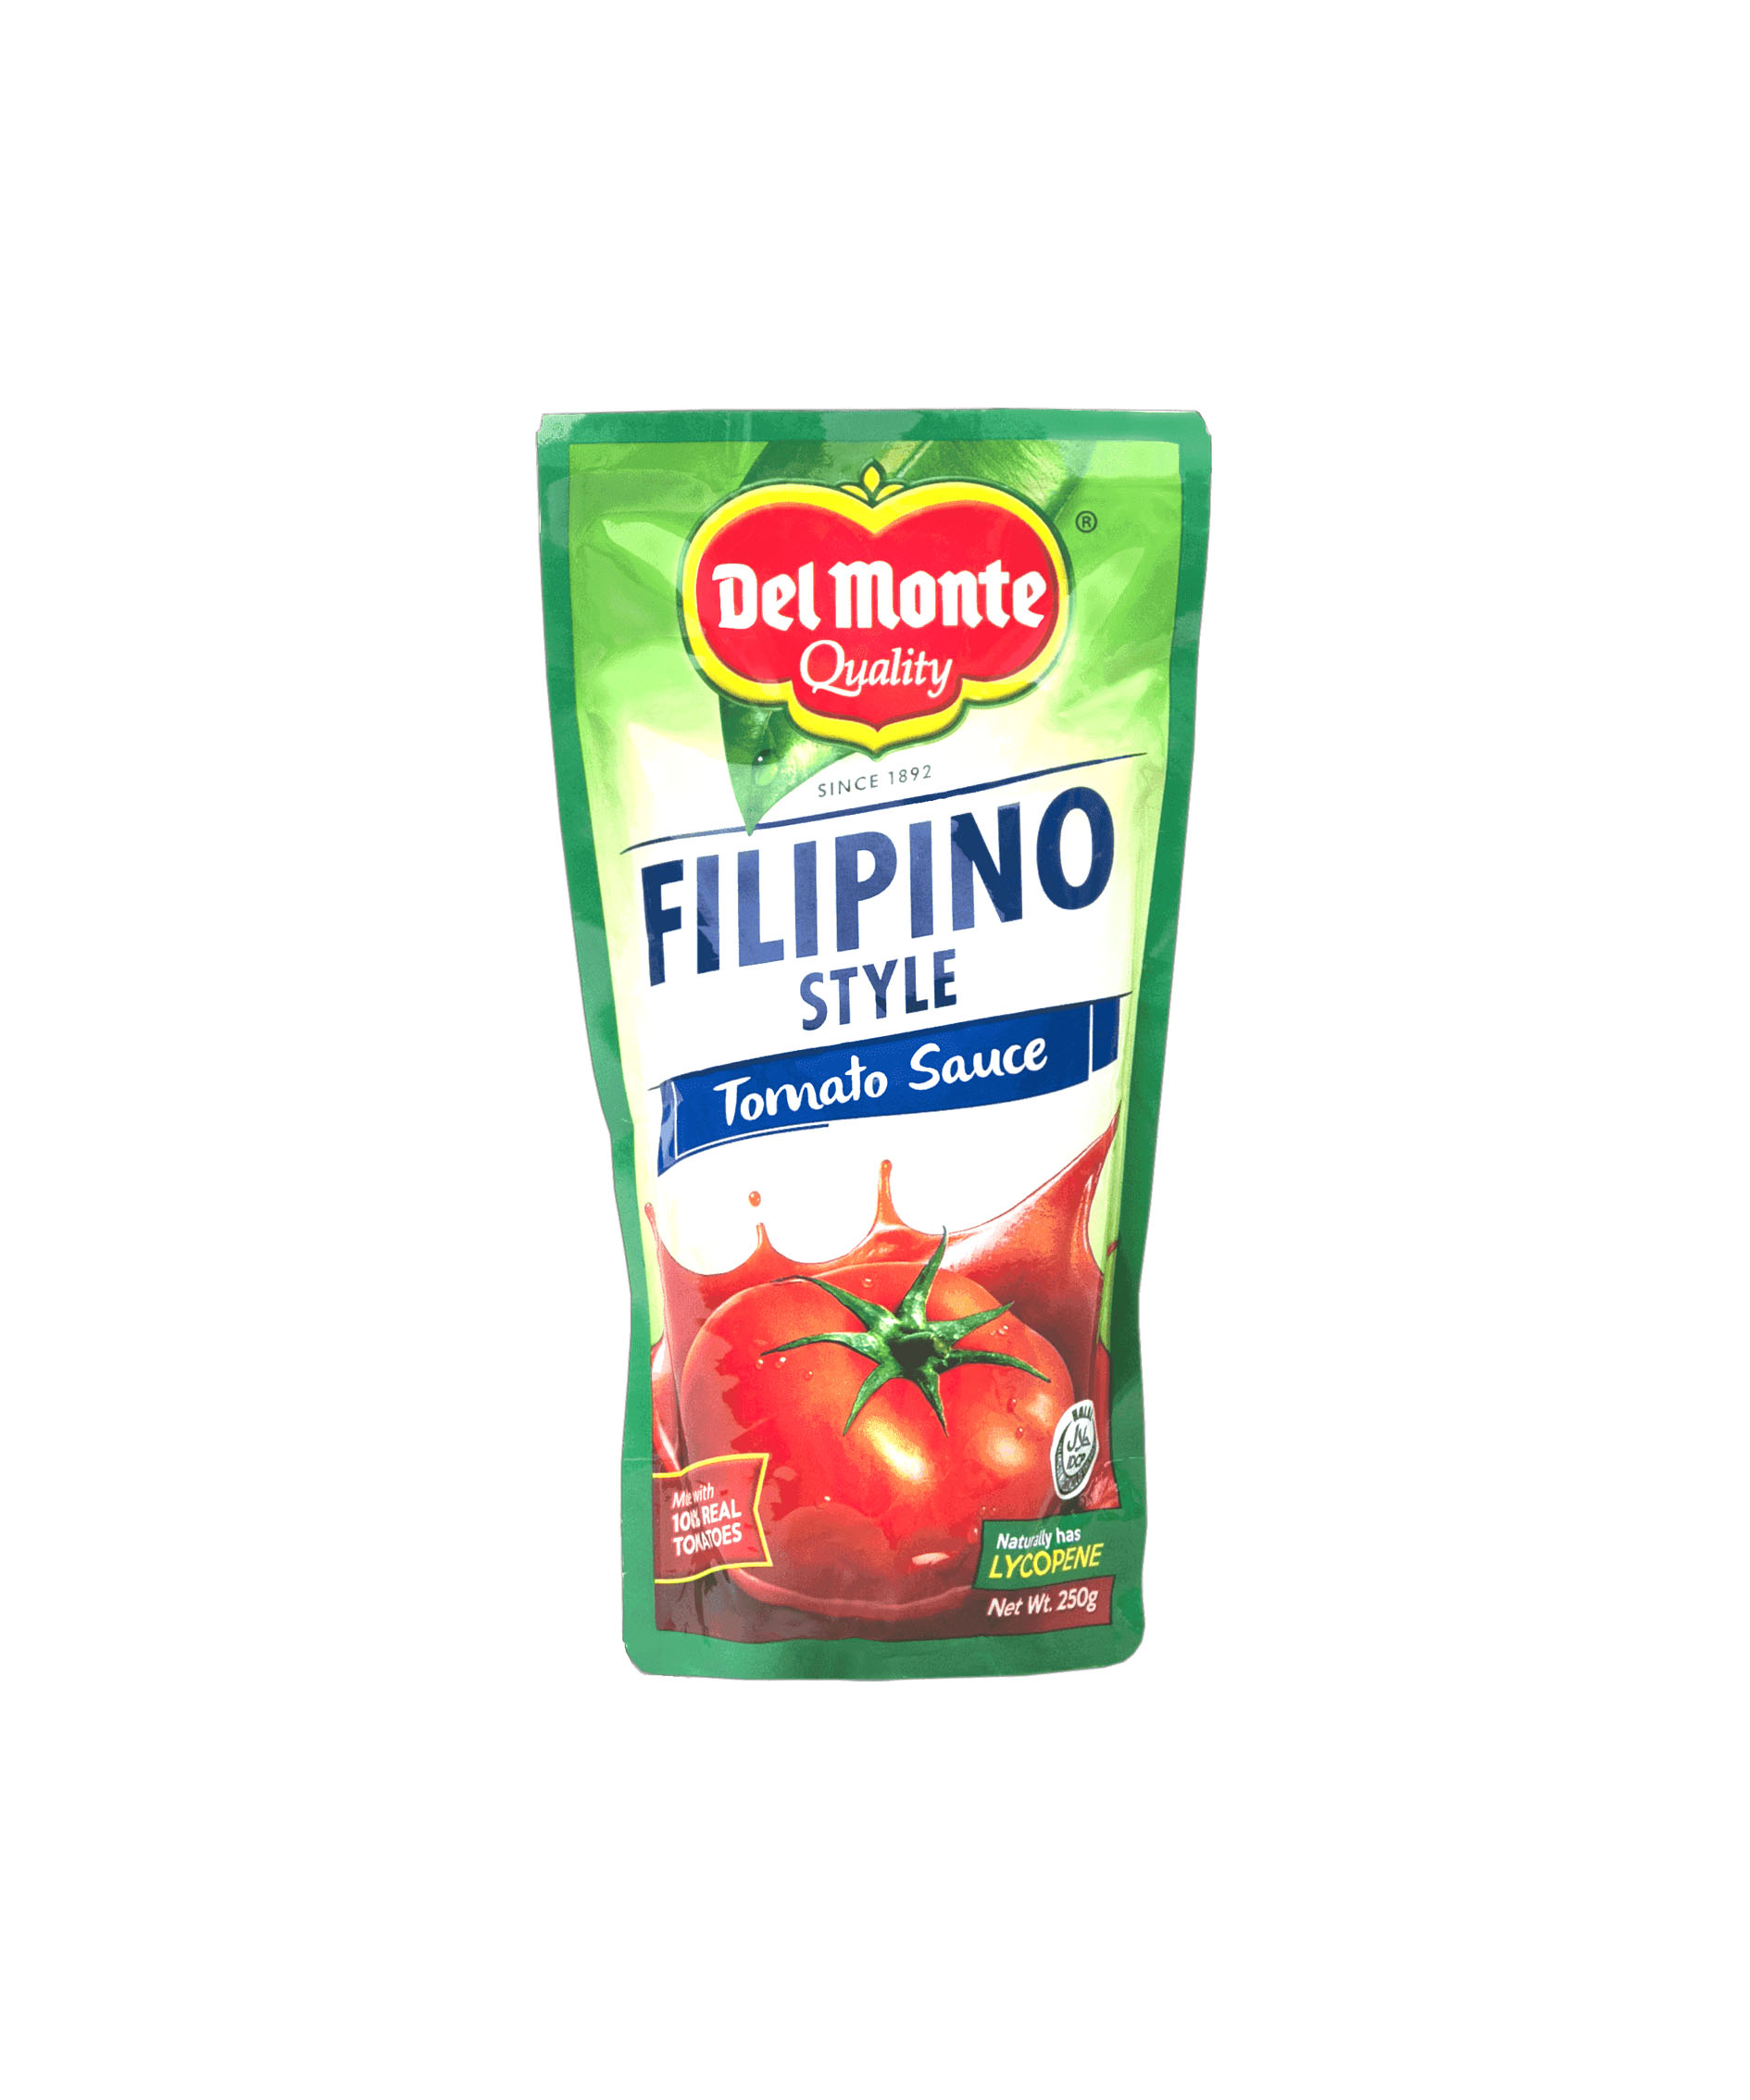 Del Monte Filipino Style Tomato Sauce 250g